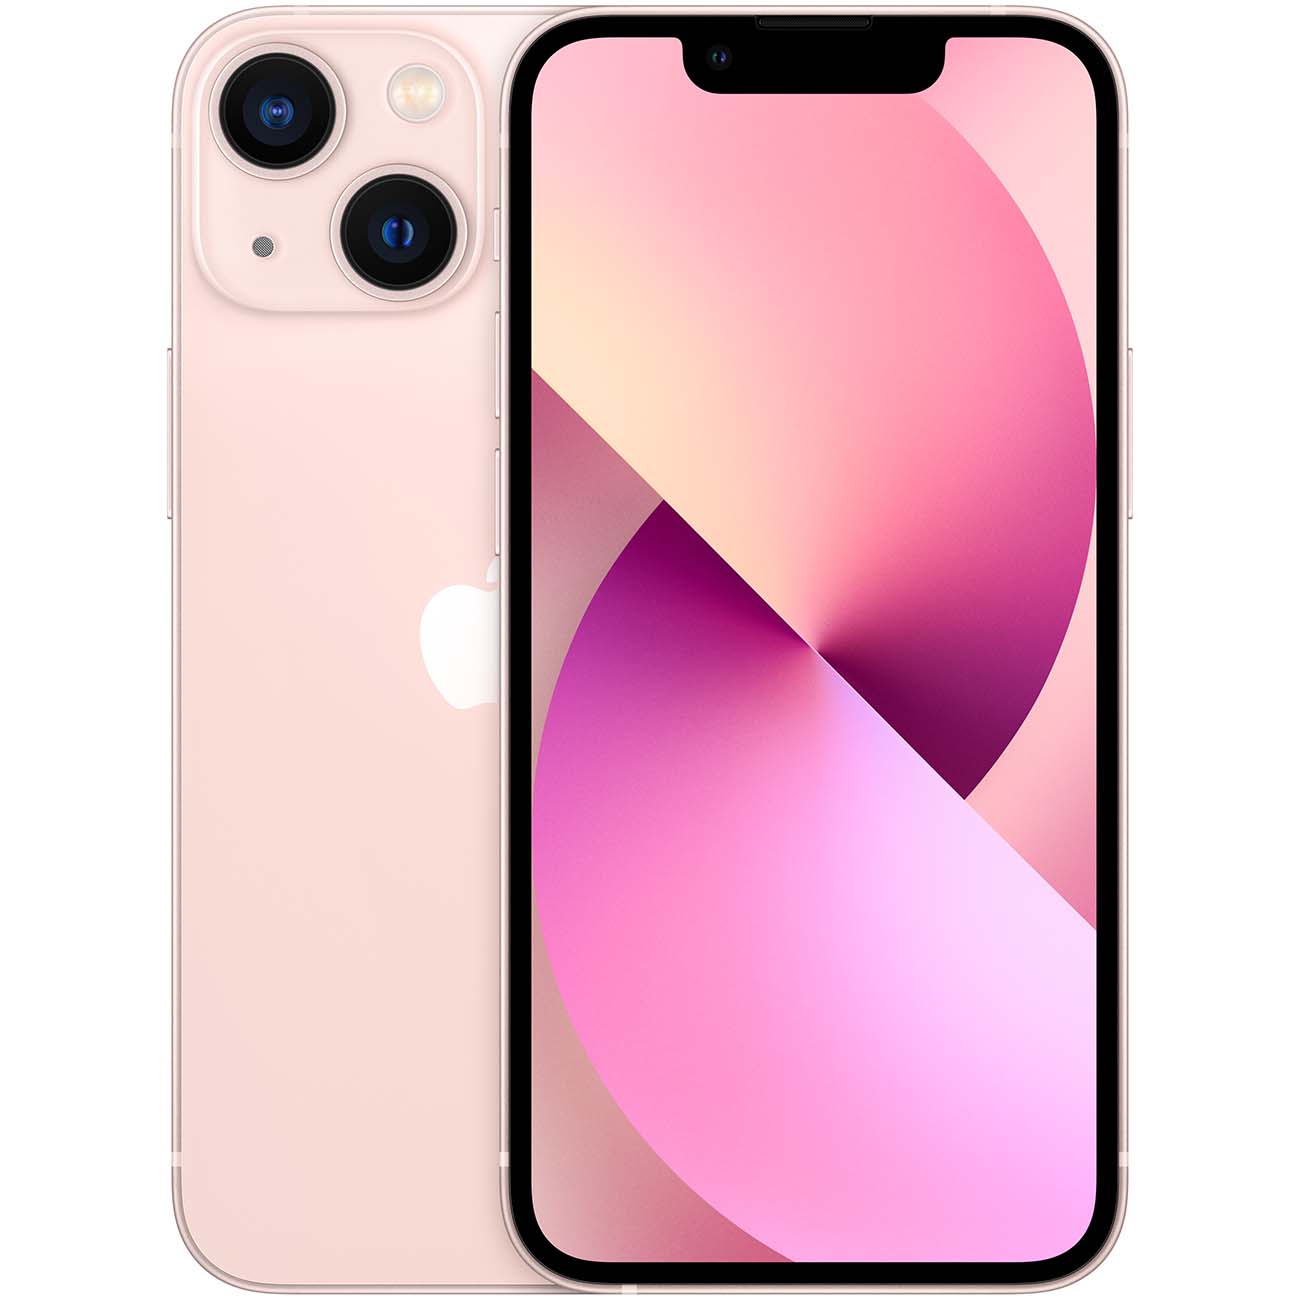 Купить смартфон apple iphone 13 mini 512gb pink Apple iPhone 13 mini в официальном магазине Apple, Samsung, Xiaomi. iPixel.ru Купить, заказ, кредит, рассрочка, отзывы,  характеристики, цена,  фотографии, в подарок.